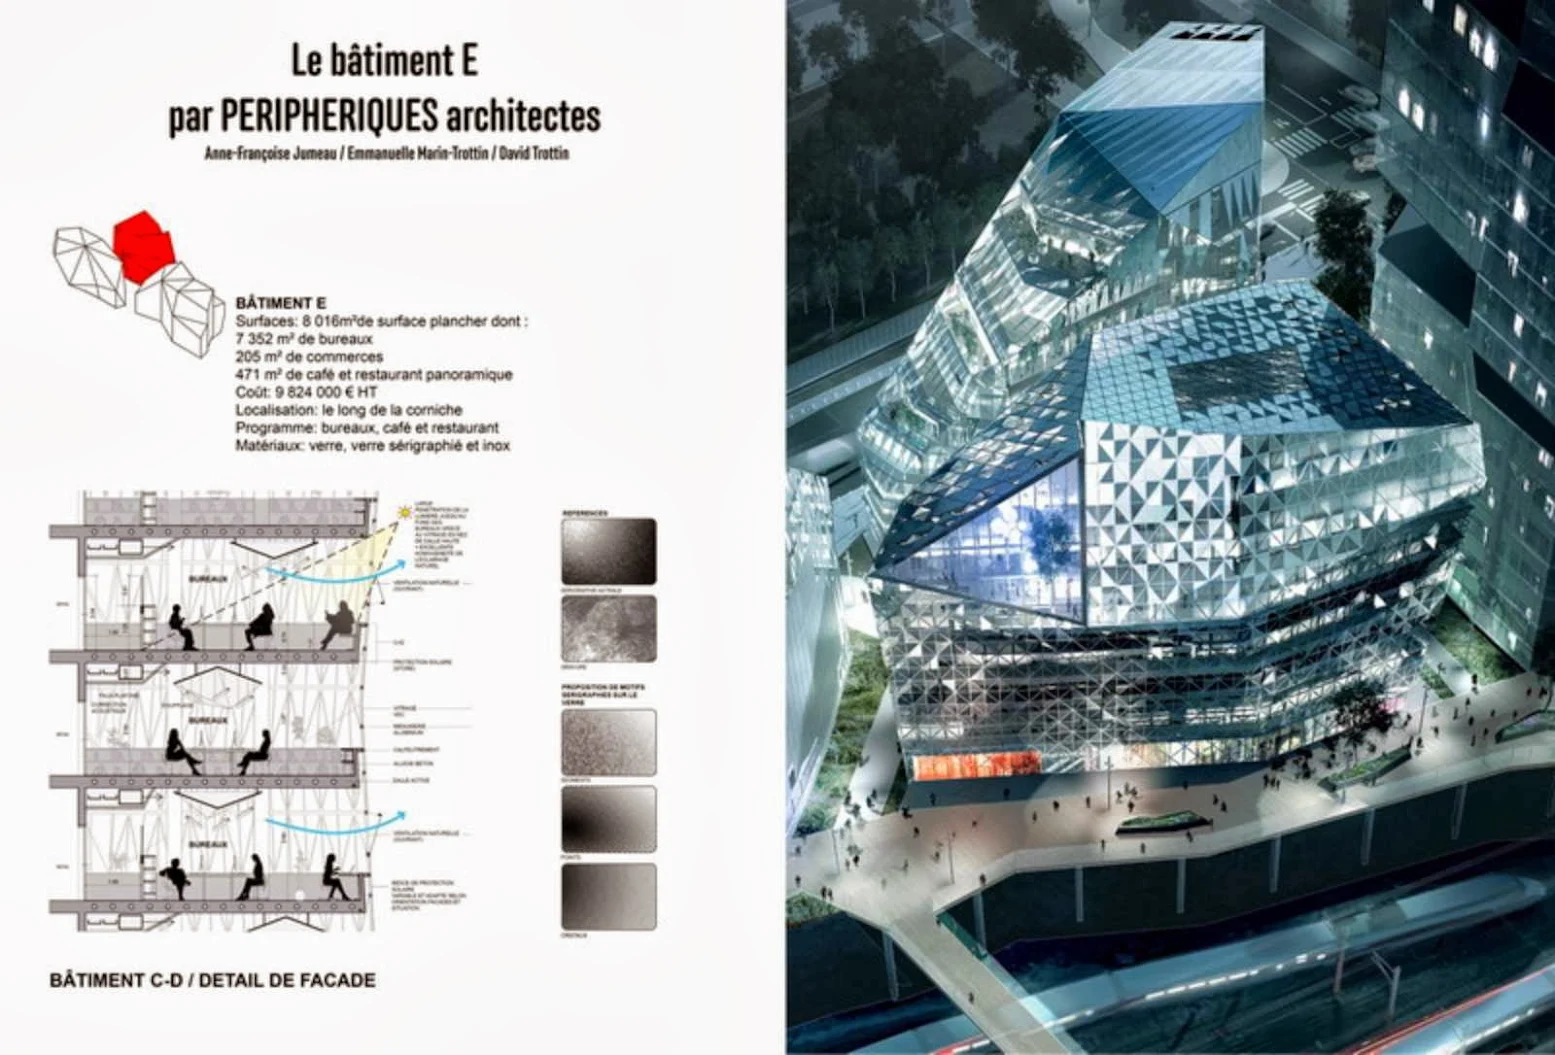 09-Cristal-Riviera-by-Périphériques-Architectes-a-LTA-Hamonic&Masson